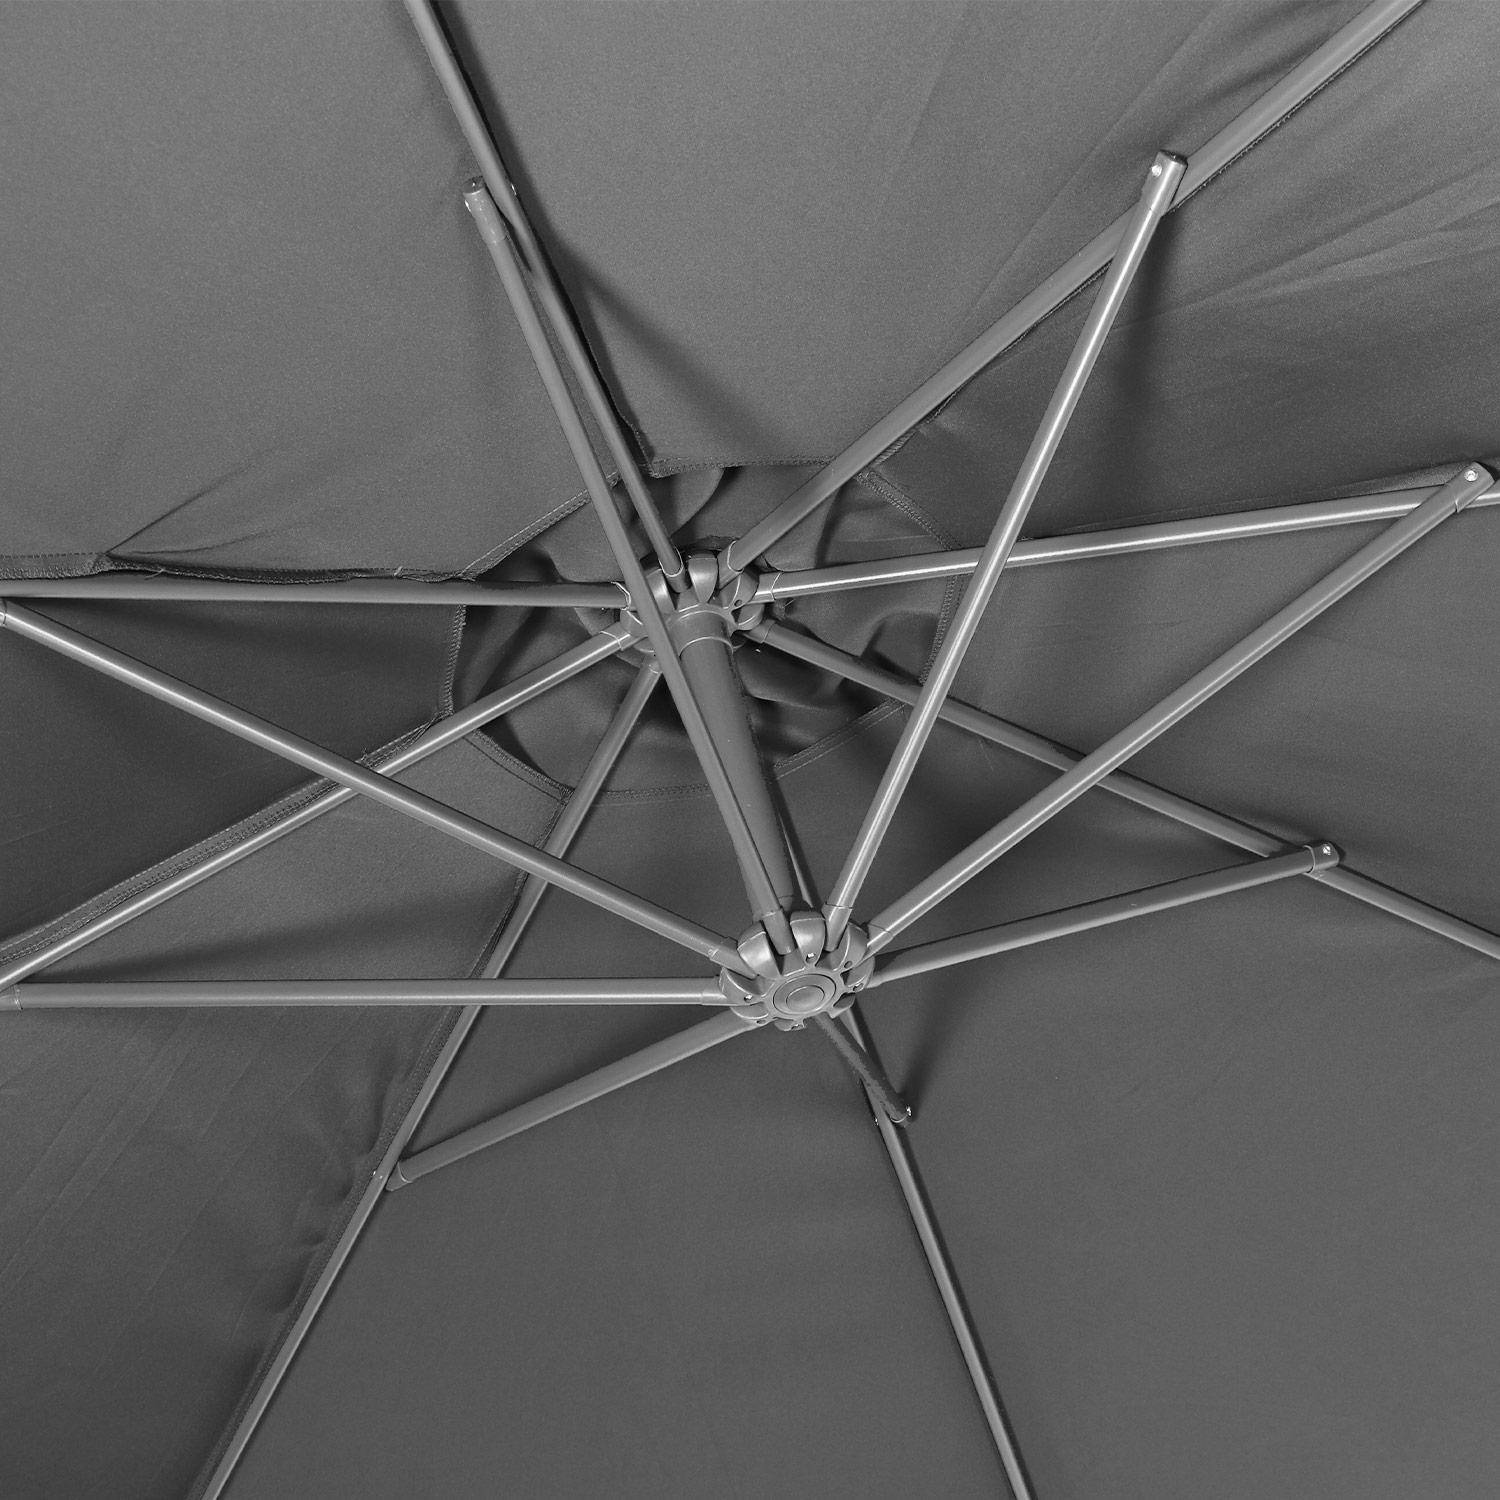 Ombrellone decentrato Ø300cm - Hardelot - Colore grigio, struttura antracite, maniglia a manovella senza ritorno.,sweeek,Photo5